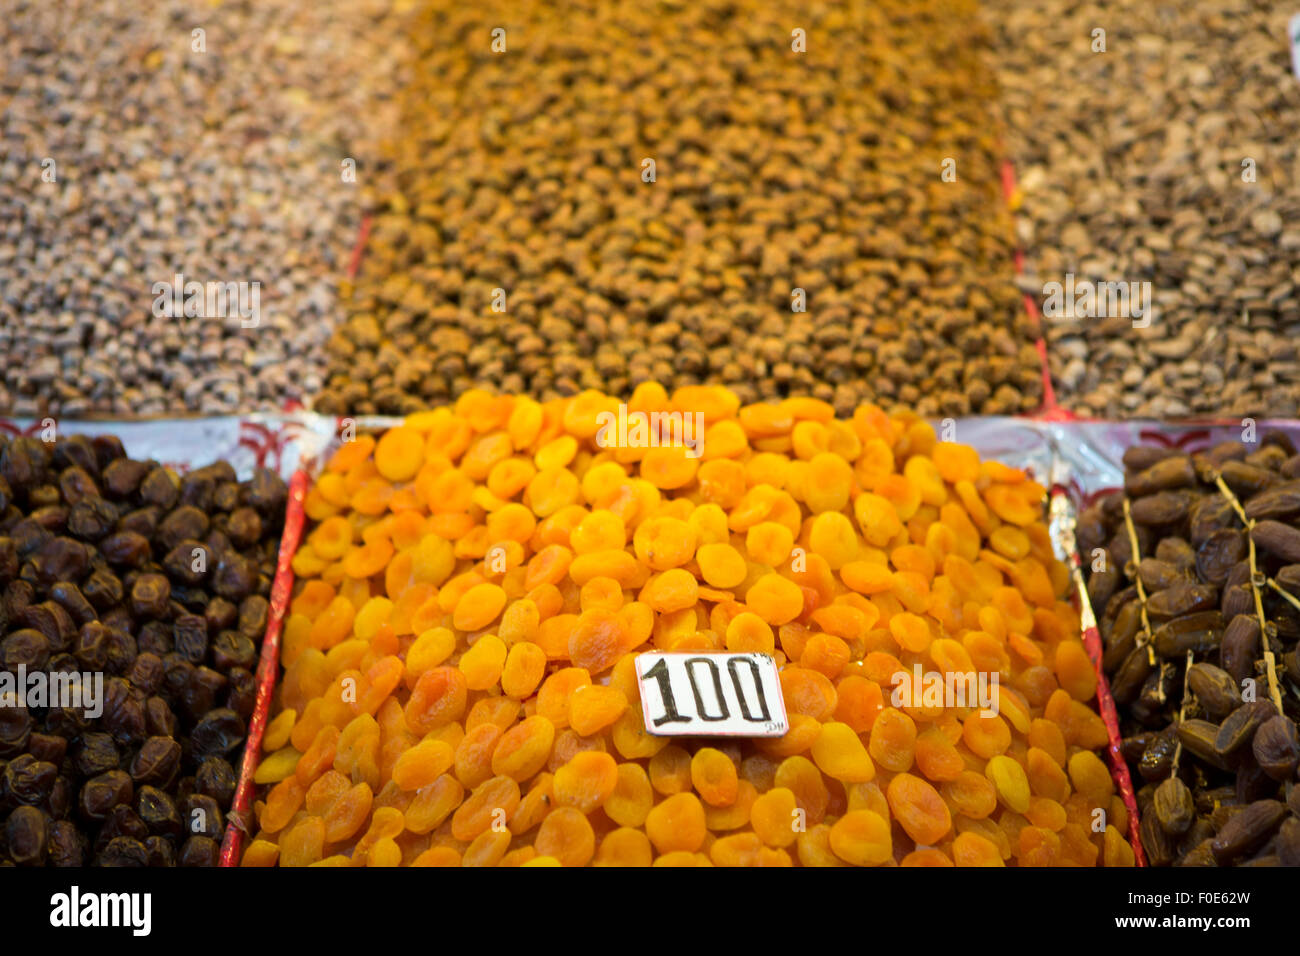 Hintergrund der orangefarbenen Trockenfrüchte mit einem Preisschild auf Marrakesch Markt ausgesetzt Stockfoto